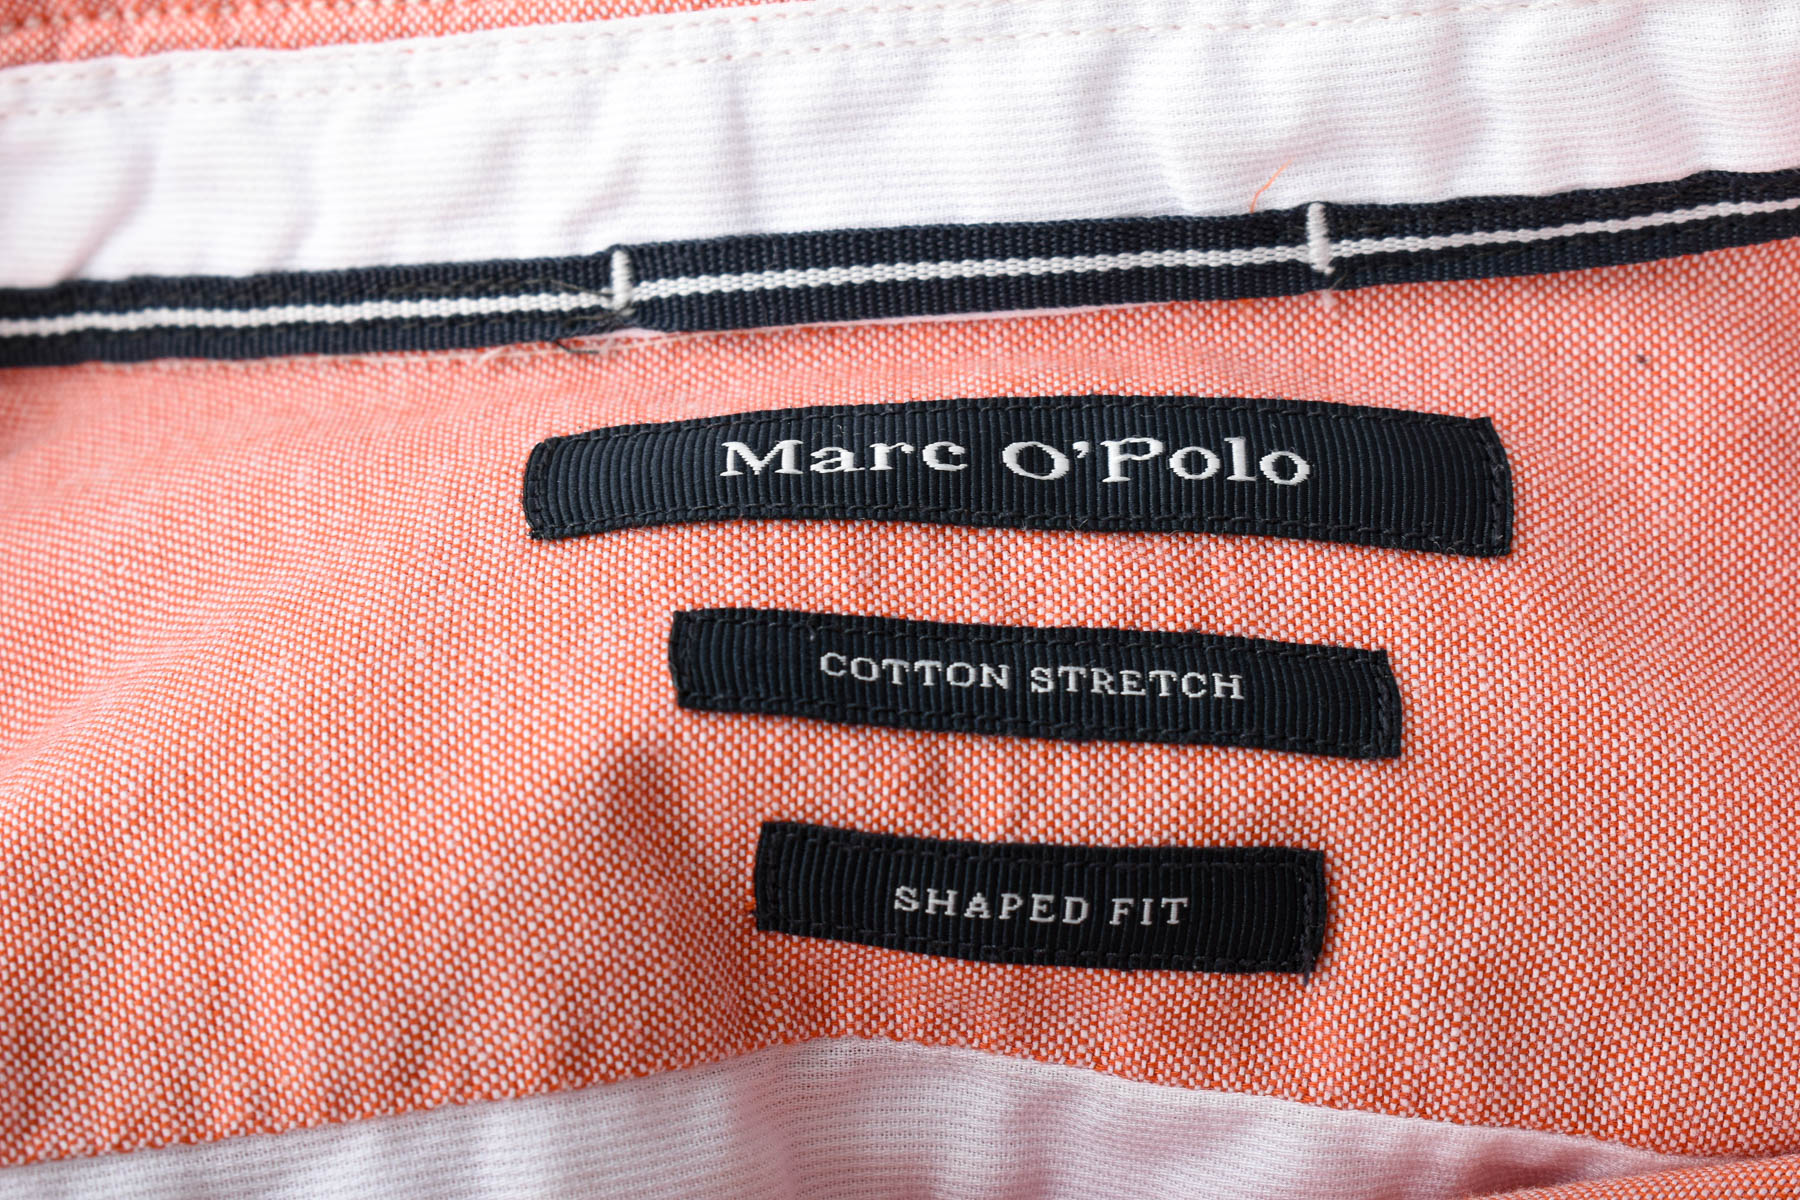 Men's shirt - Marc O' Polo - 2